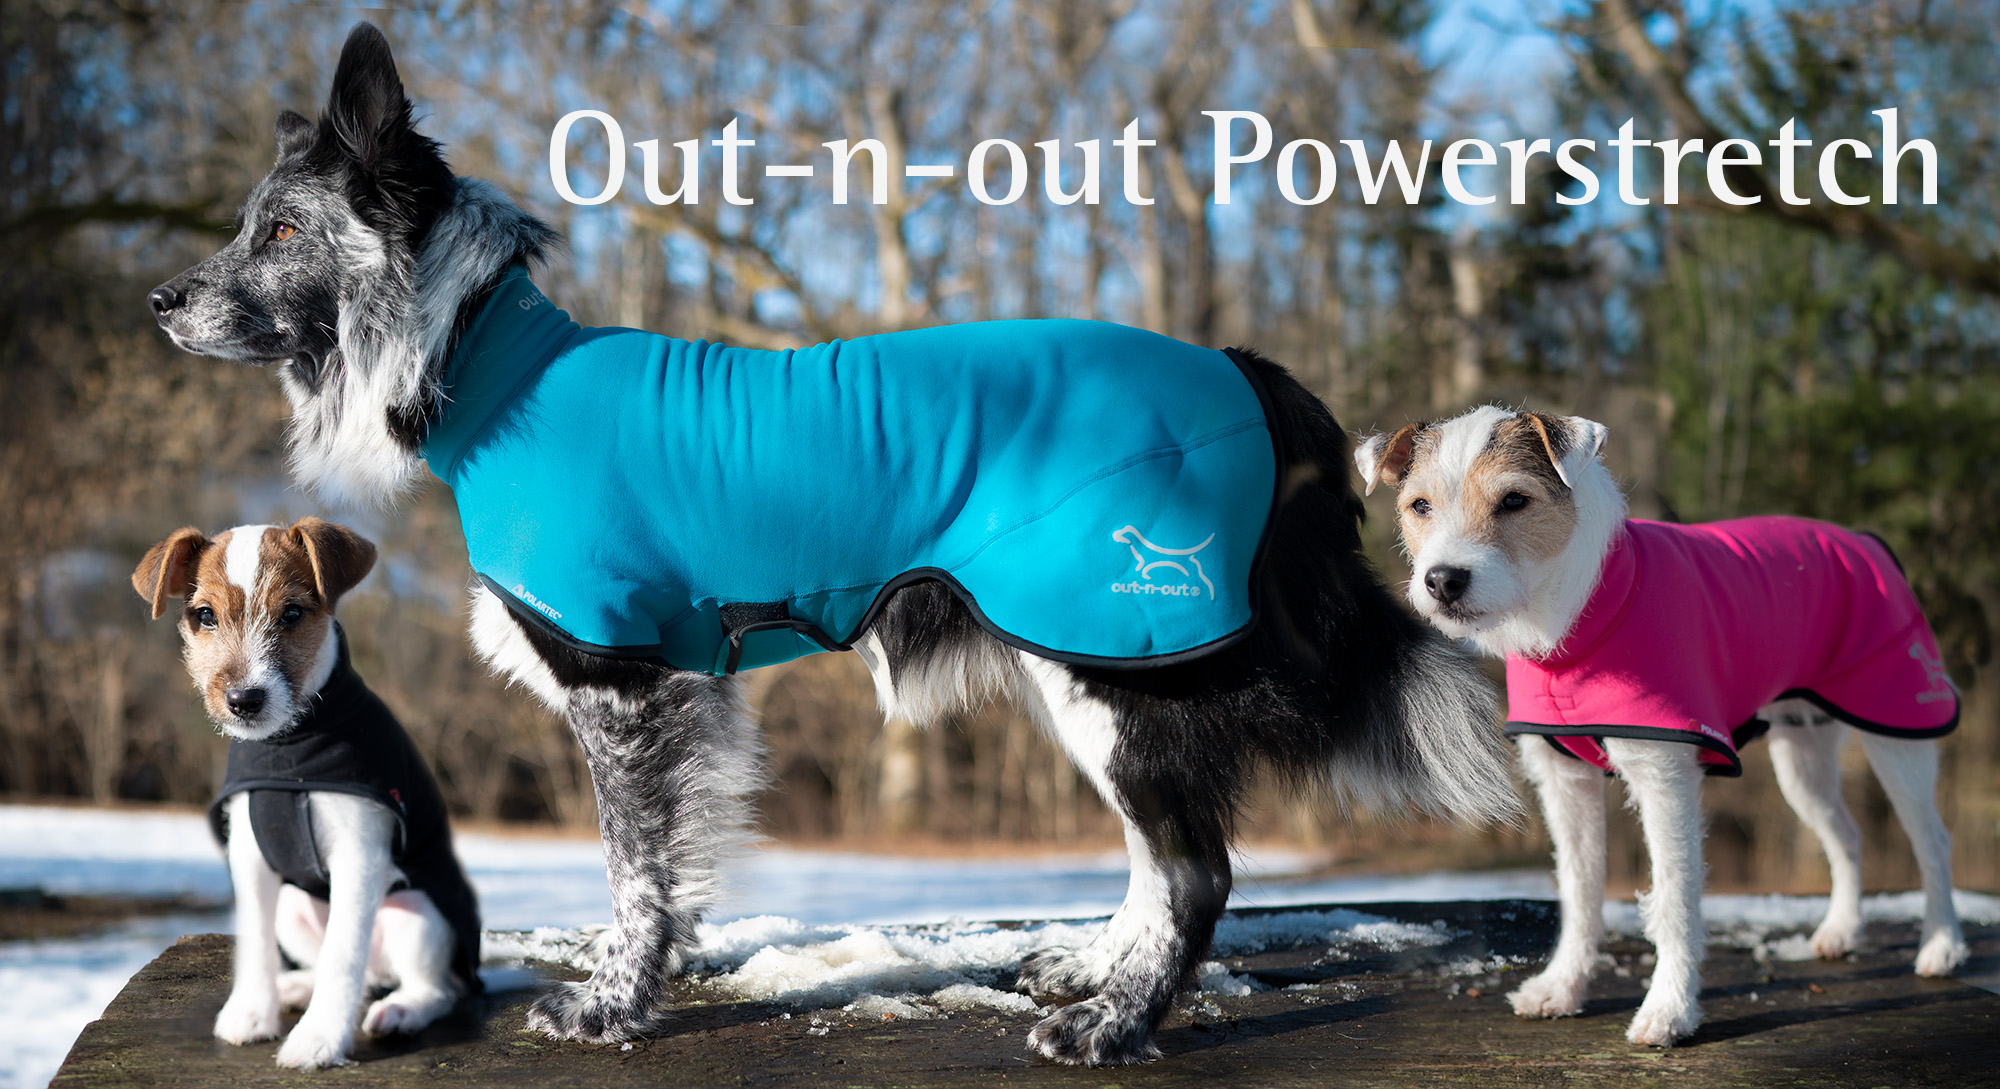 Dog jacket in Polartec Powerstretch pro